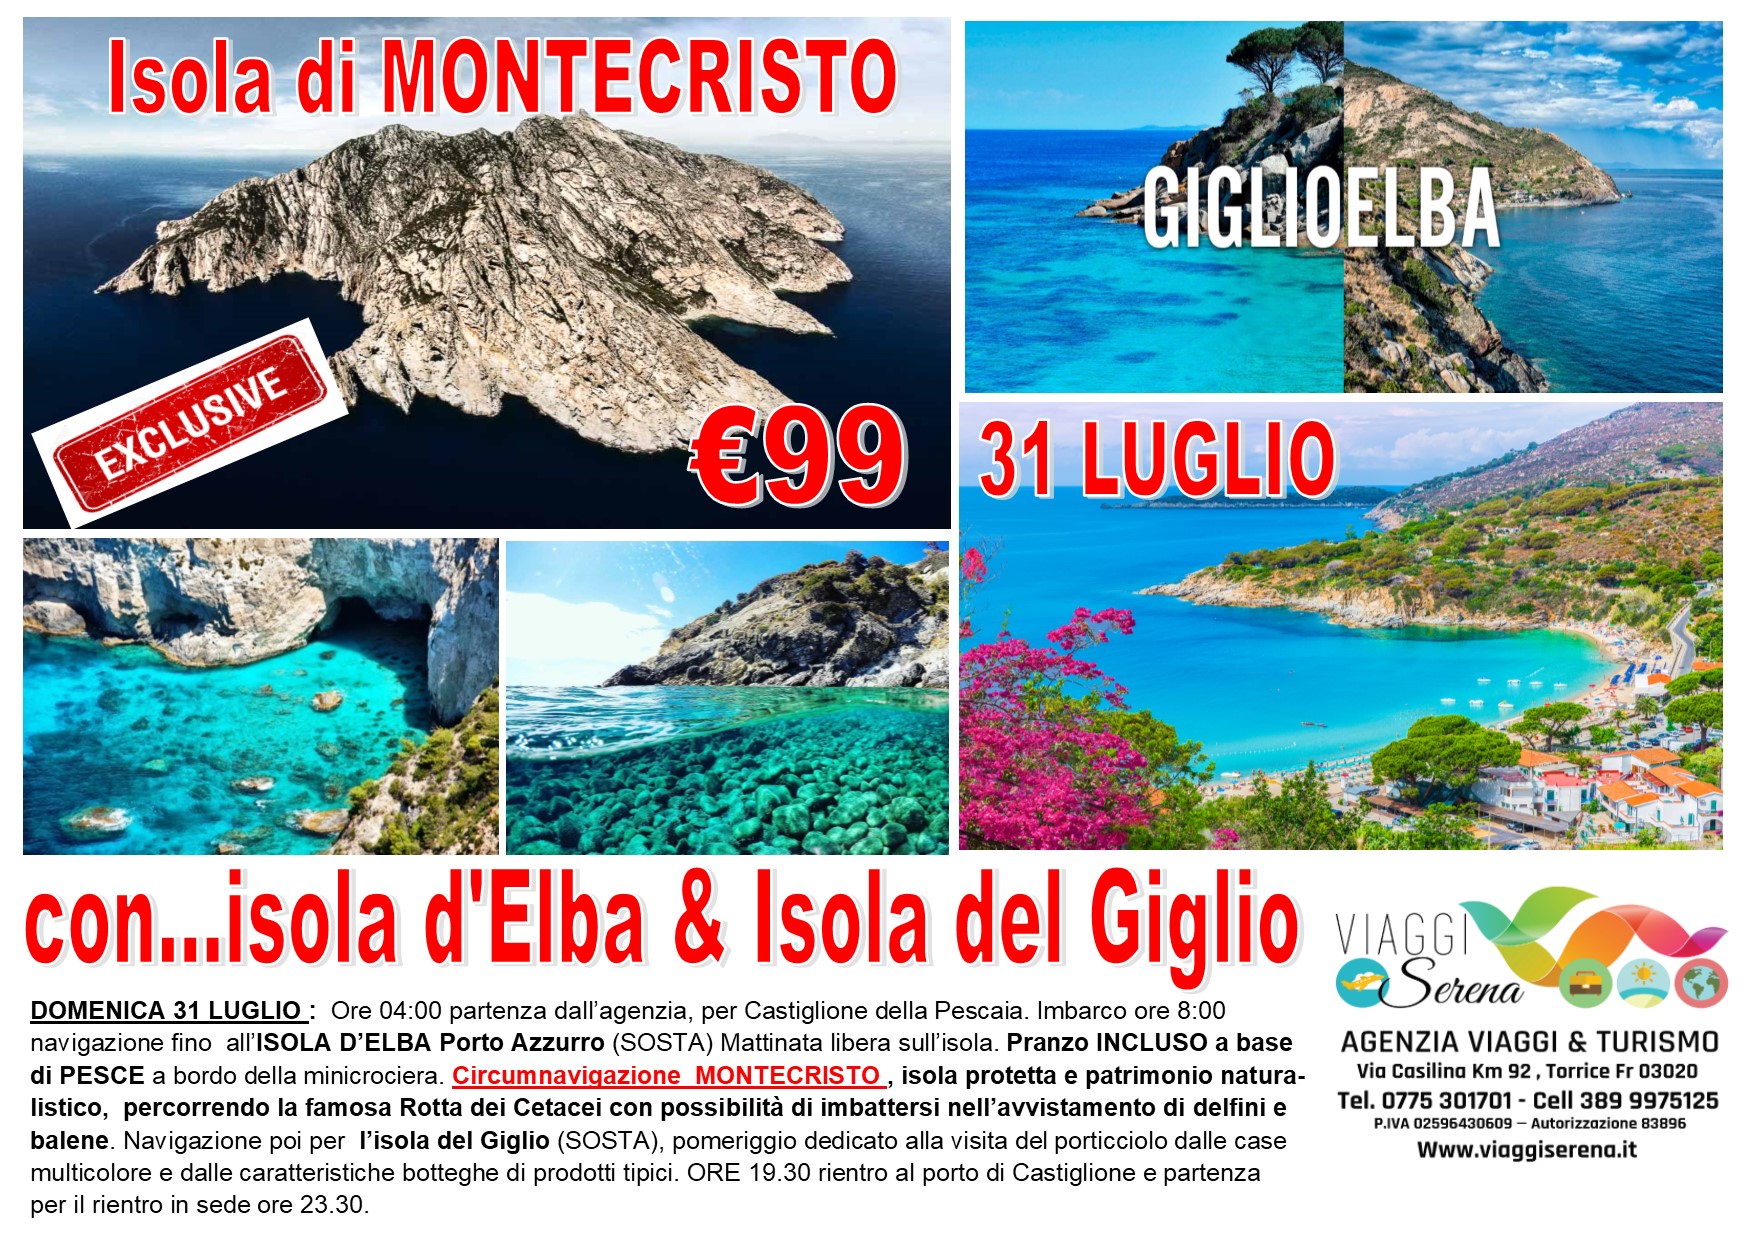 Viaggi di Gruppo: Speciale Mini crociera MONTECRISTO, Isola d’Elba e Isola del Giglio 31 Luglio € 99,00